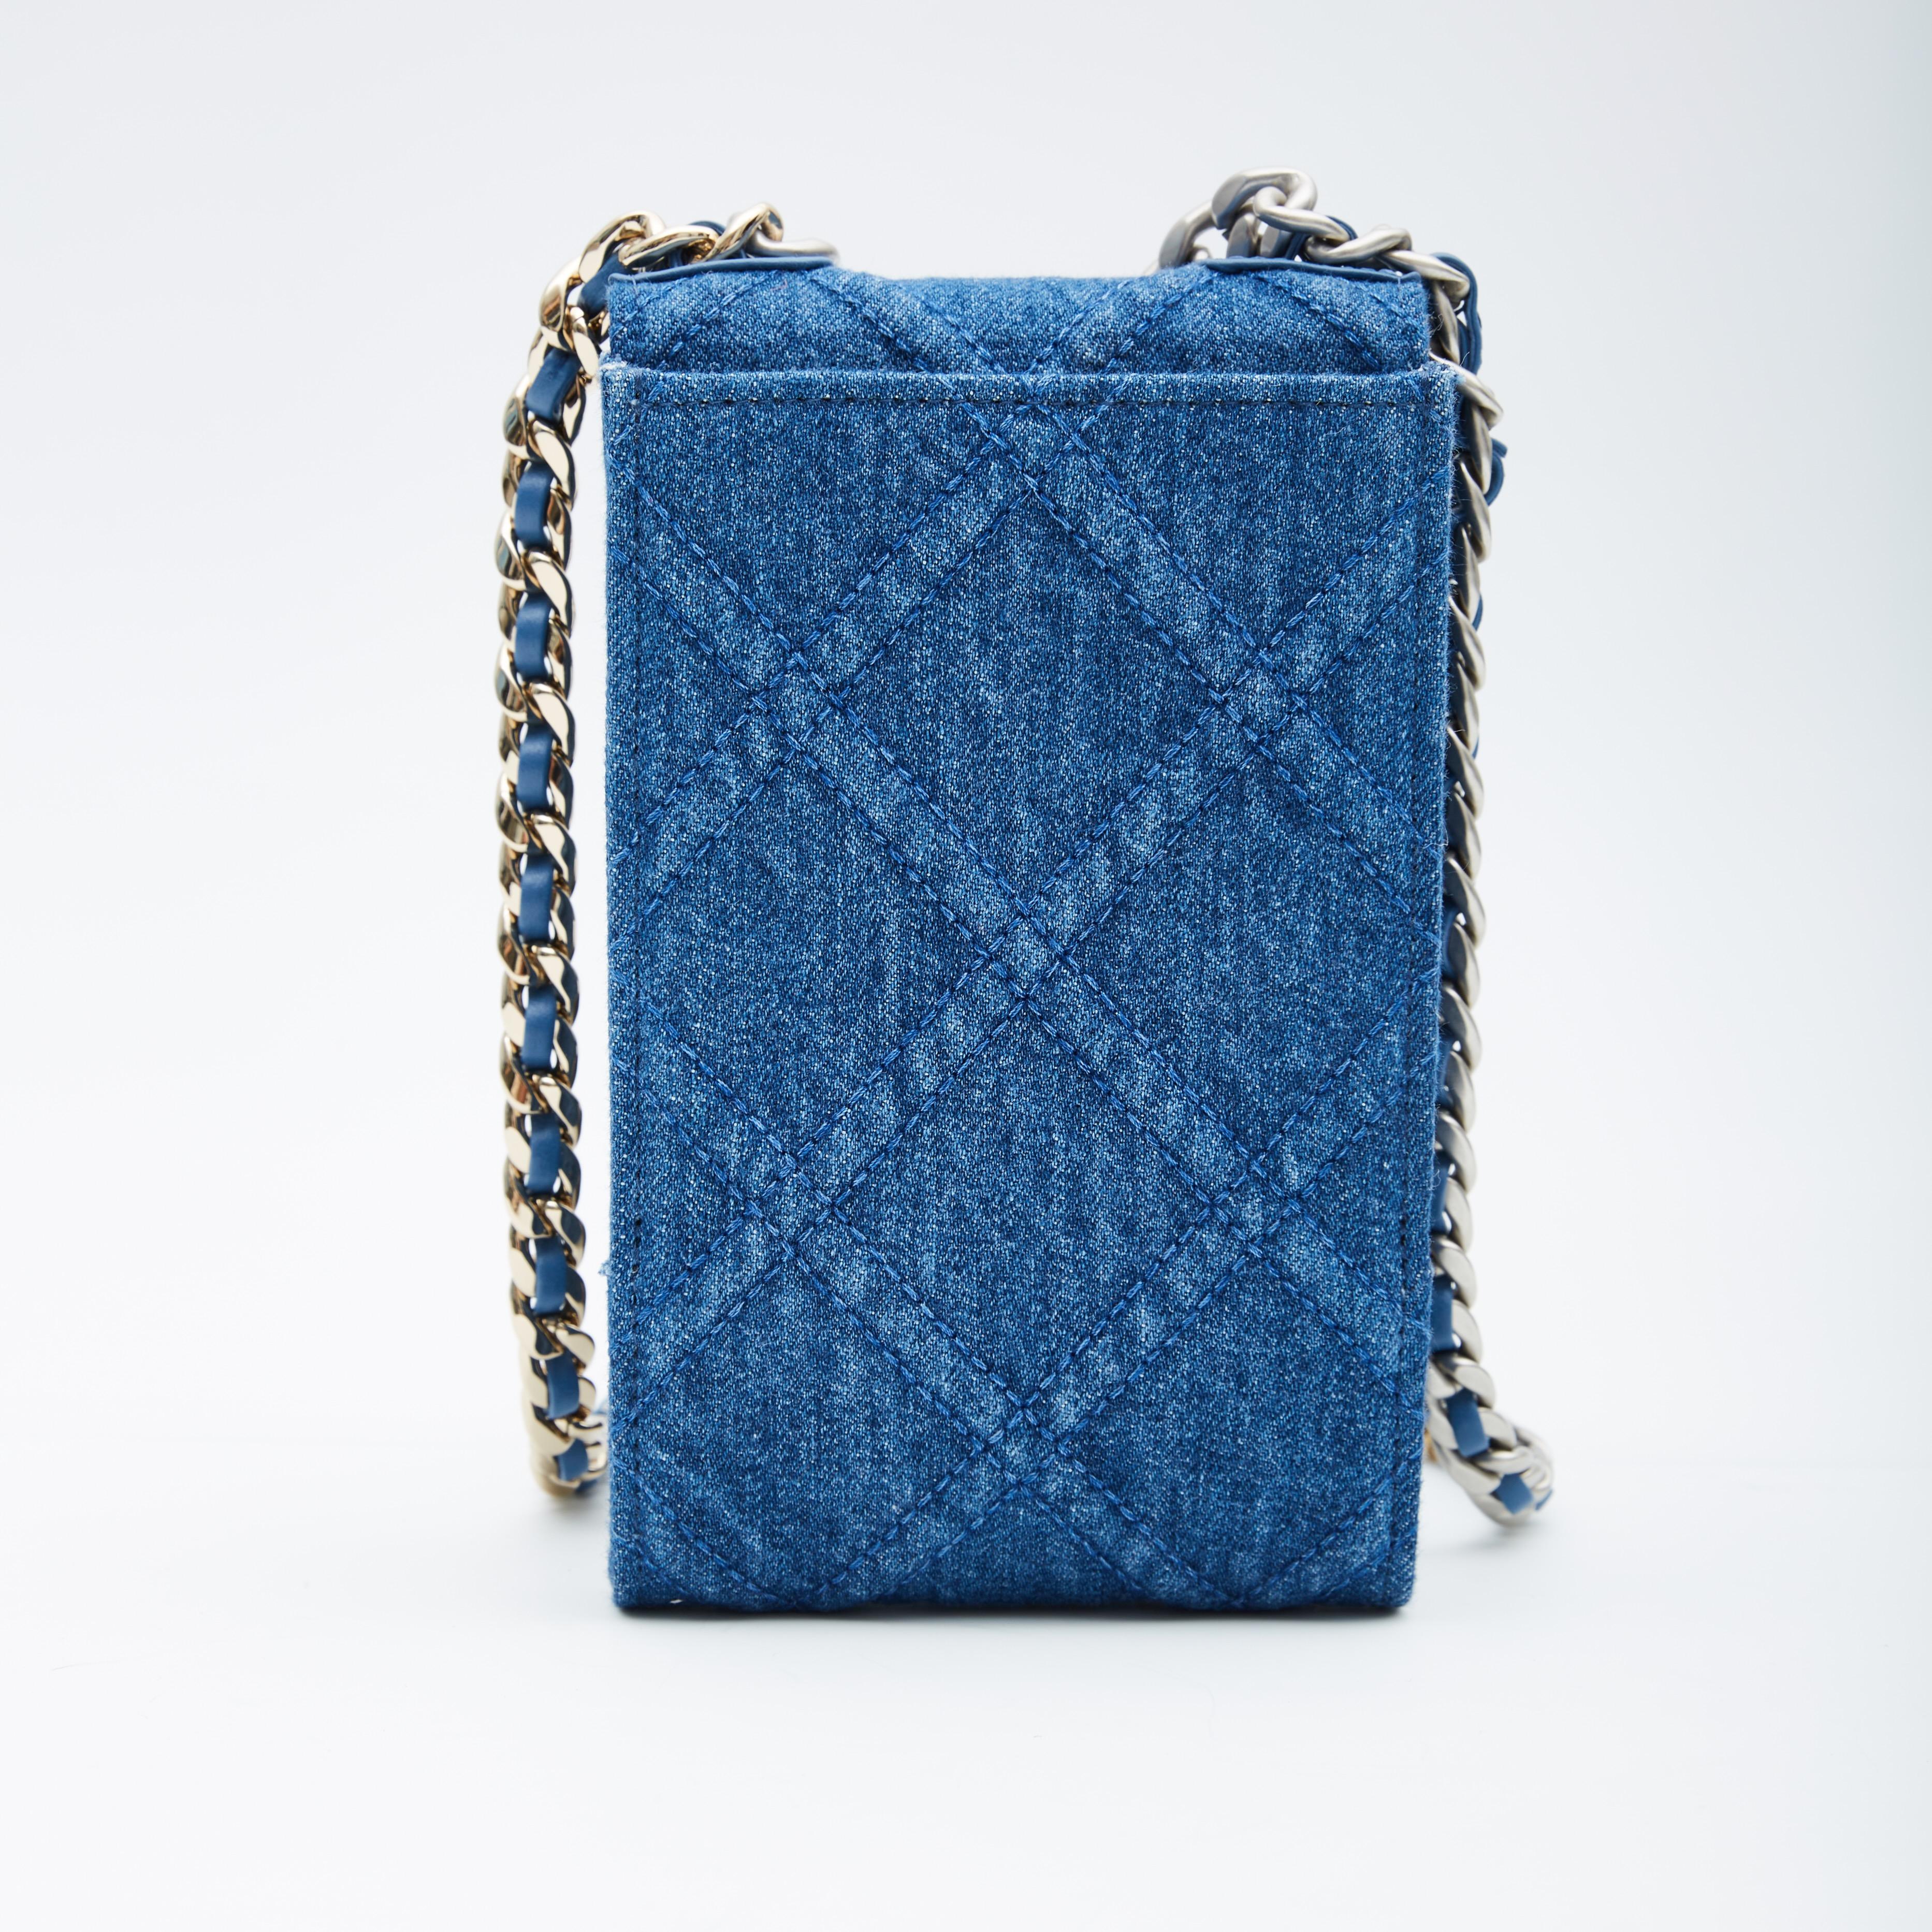 Ce sac à bandoulière est réalisé en denim bleu avec des détails en cuir bleu et présente une bandoulière en chaîne argentée entrelacée de cuir bleu, un pad en cuir, un rabat avant avec fermeture à bouton-pression, des ferrures argentées et dorées et